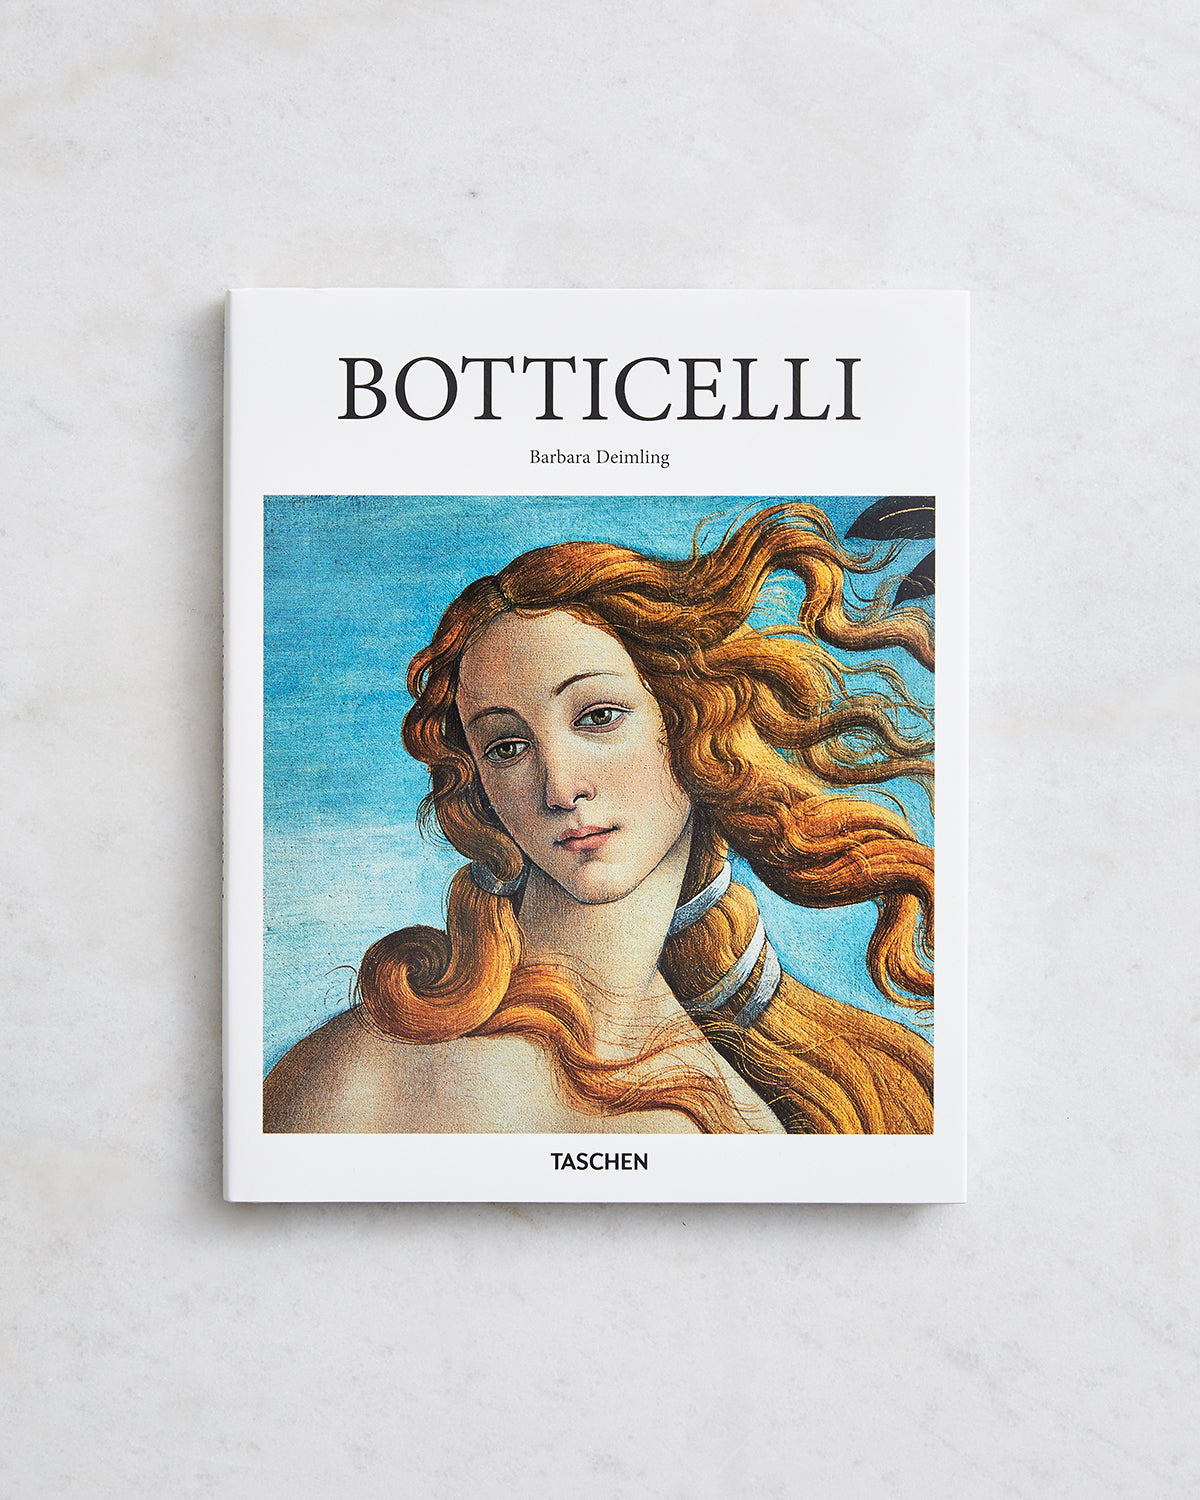 Botticelli (Taschen Basic Art Series 2.0) by Barbara Deimling